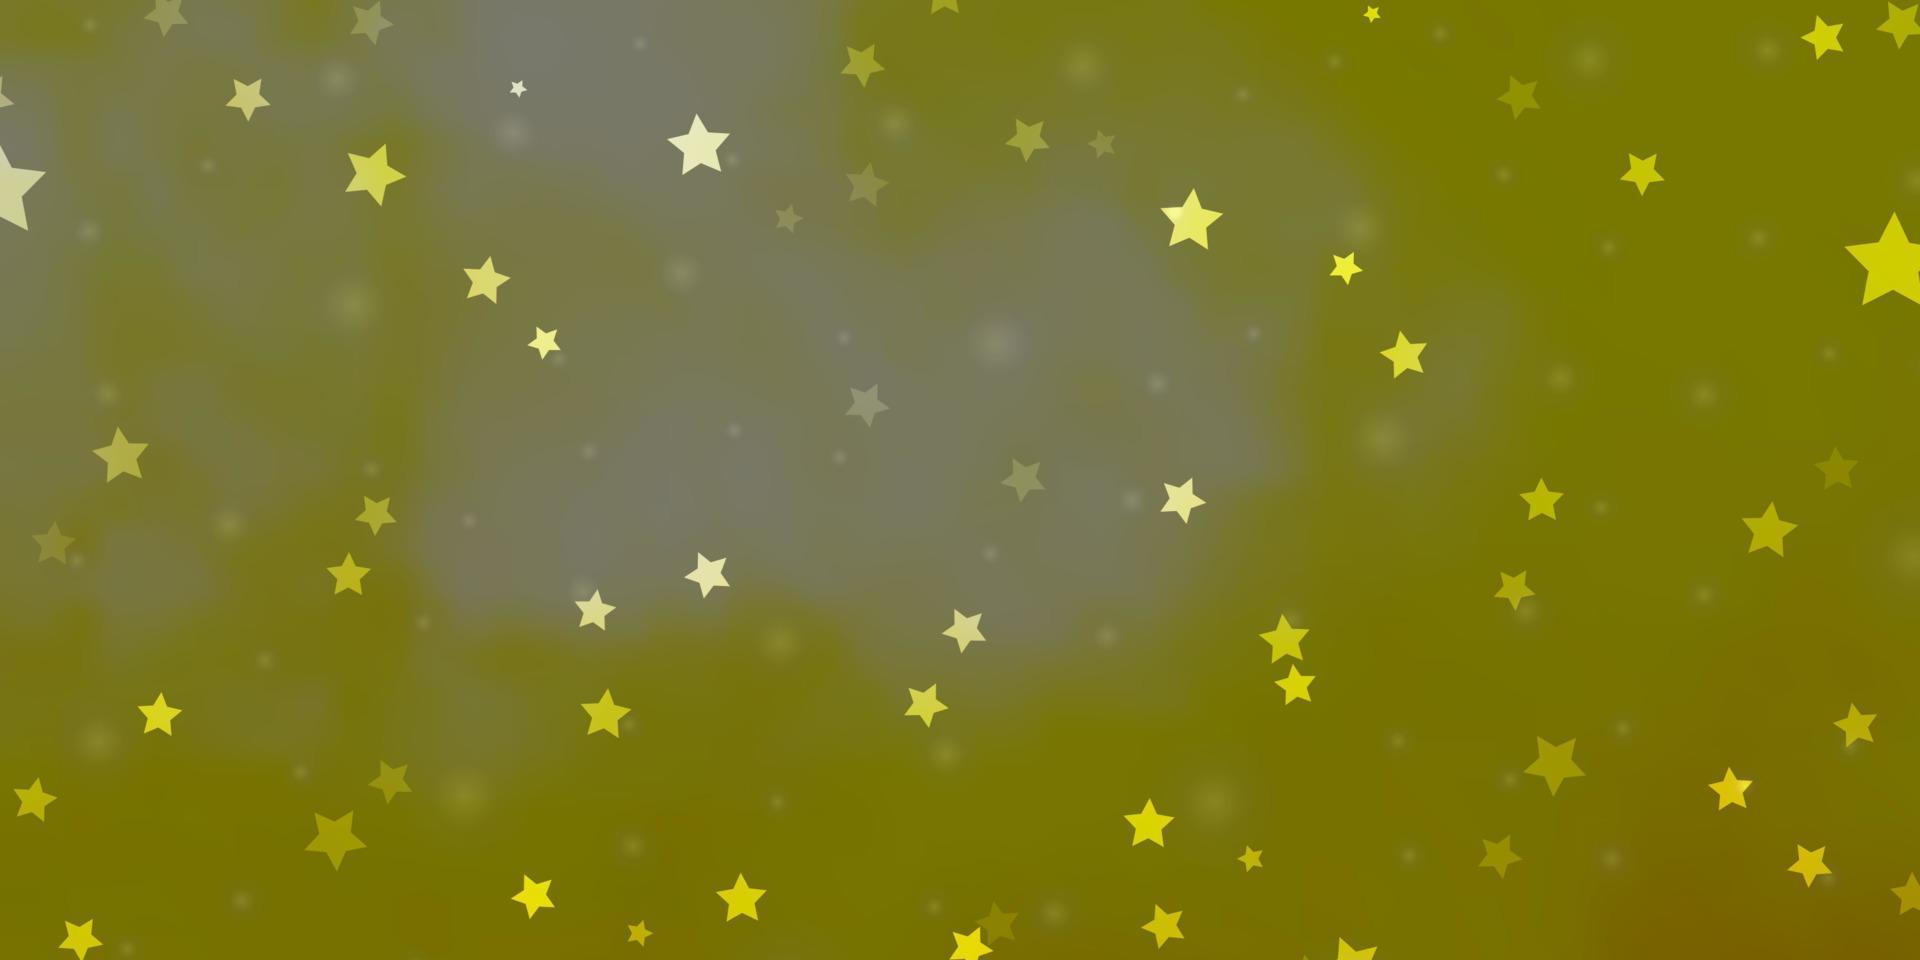 trama vettoriale giallo chiaro con bellissime stelle.